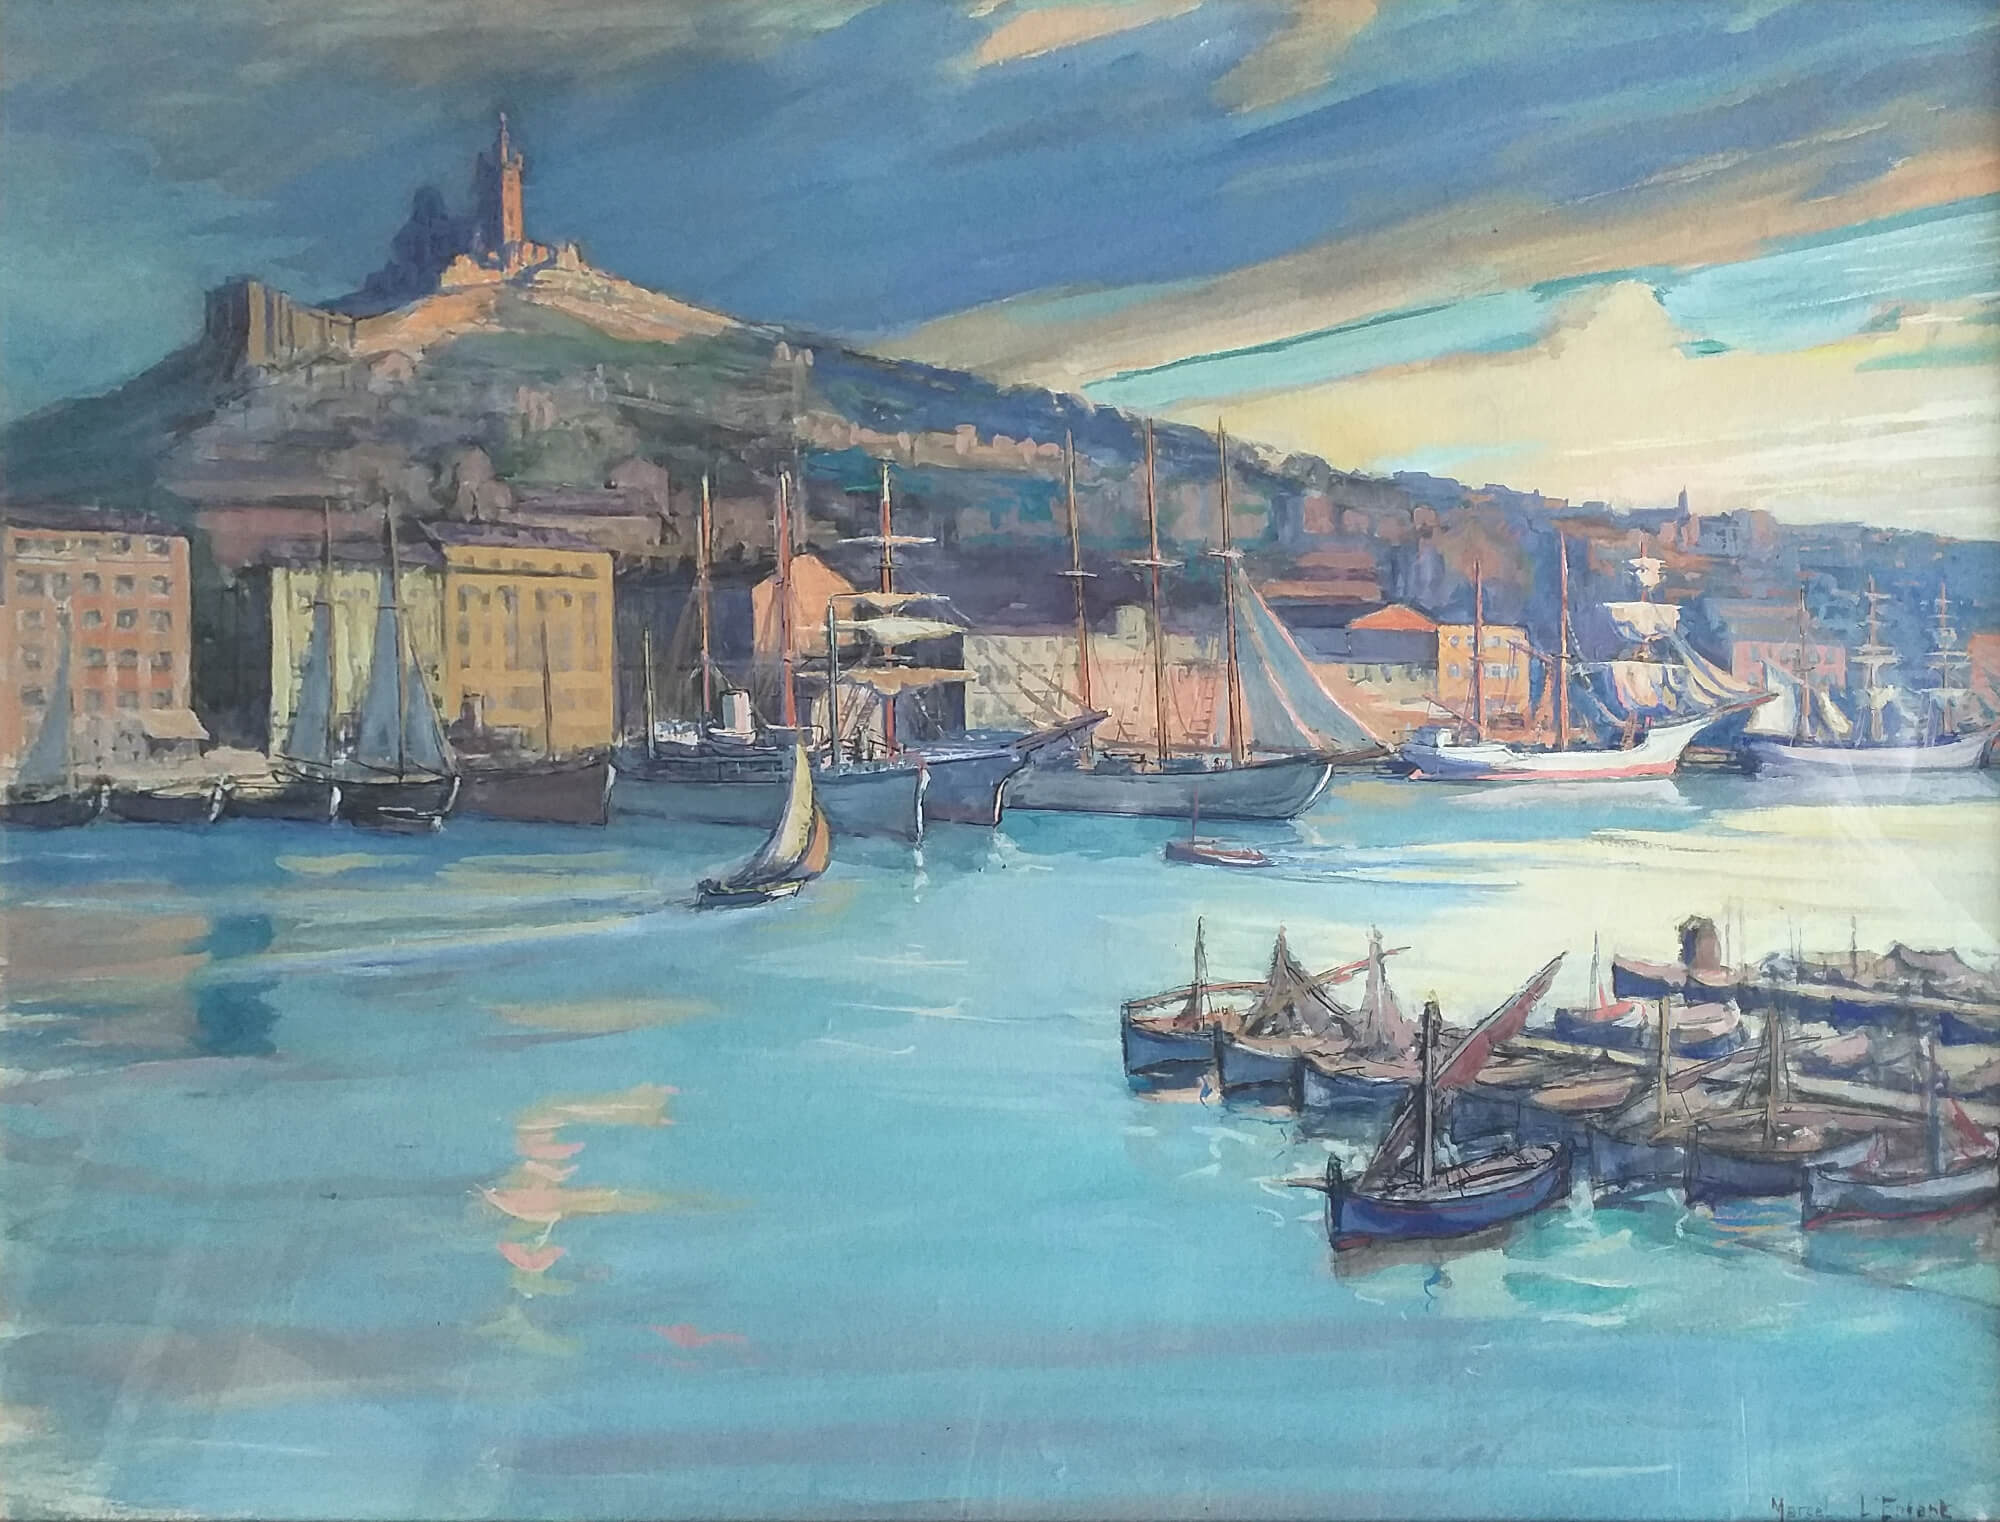 Une vue du début du Vieux-Port de Marseille, croquée depuis le Quai du Port avant la 2e Guerre Mondiale. La silhouette majestueuse de la Basilique Notre-Dame-de-la-Garde domine le port et semble presque toiser le soleil couchant.